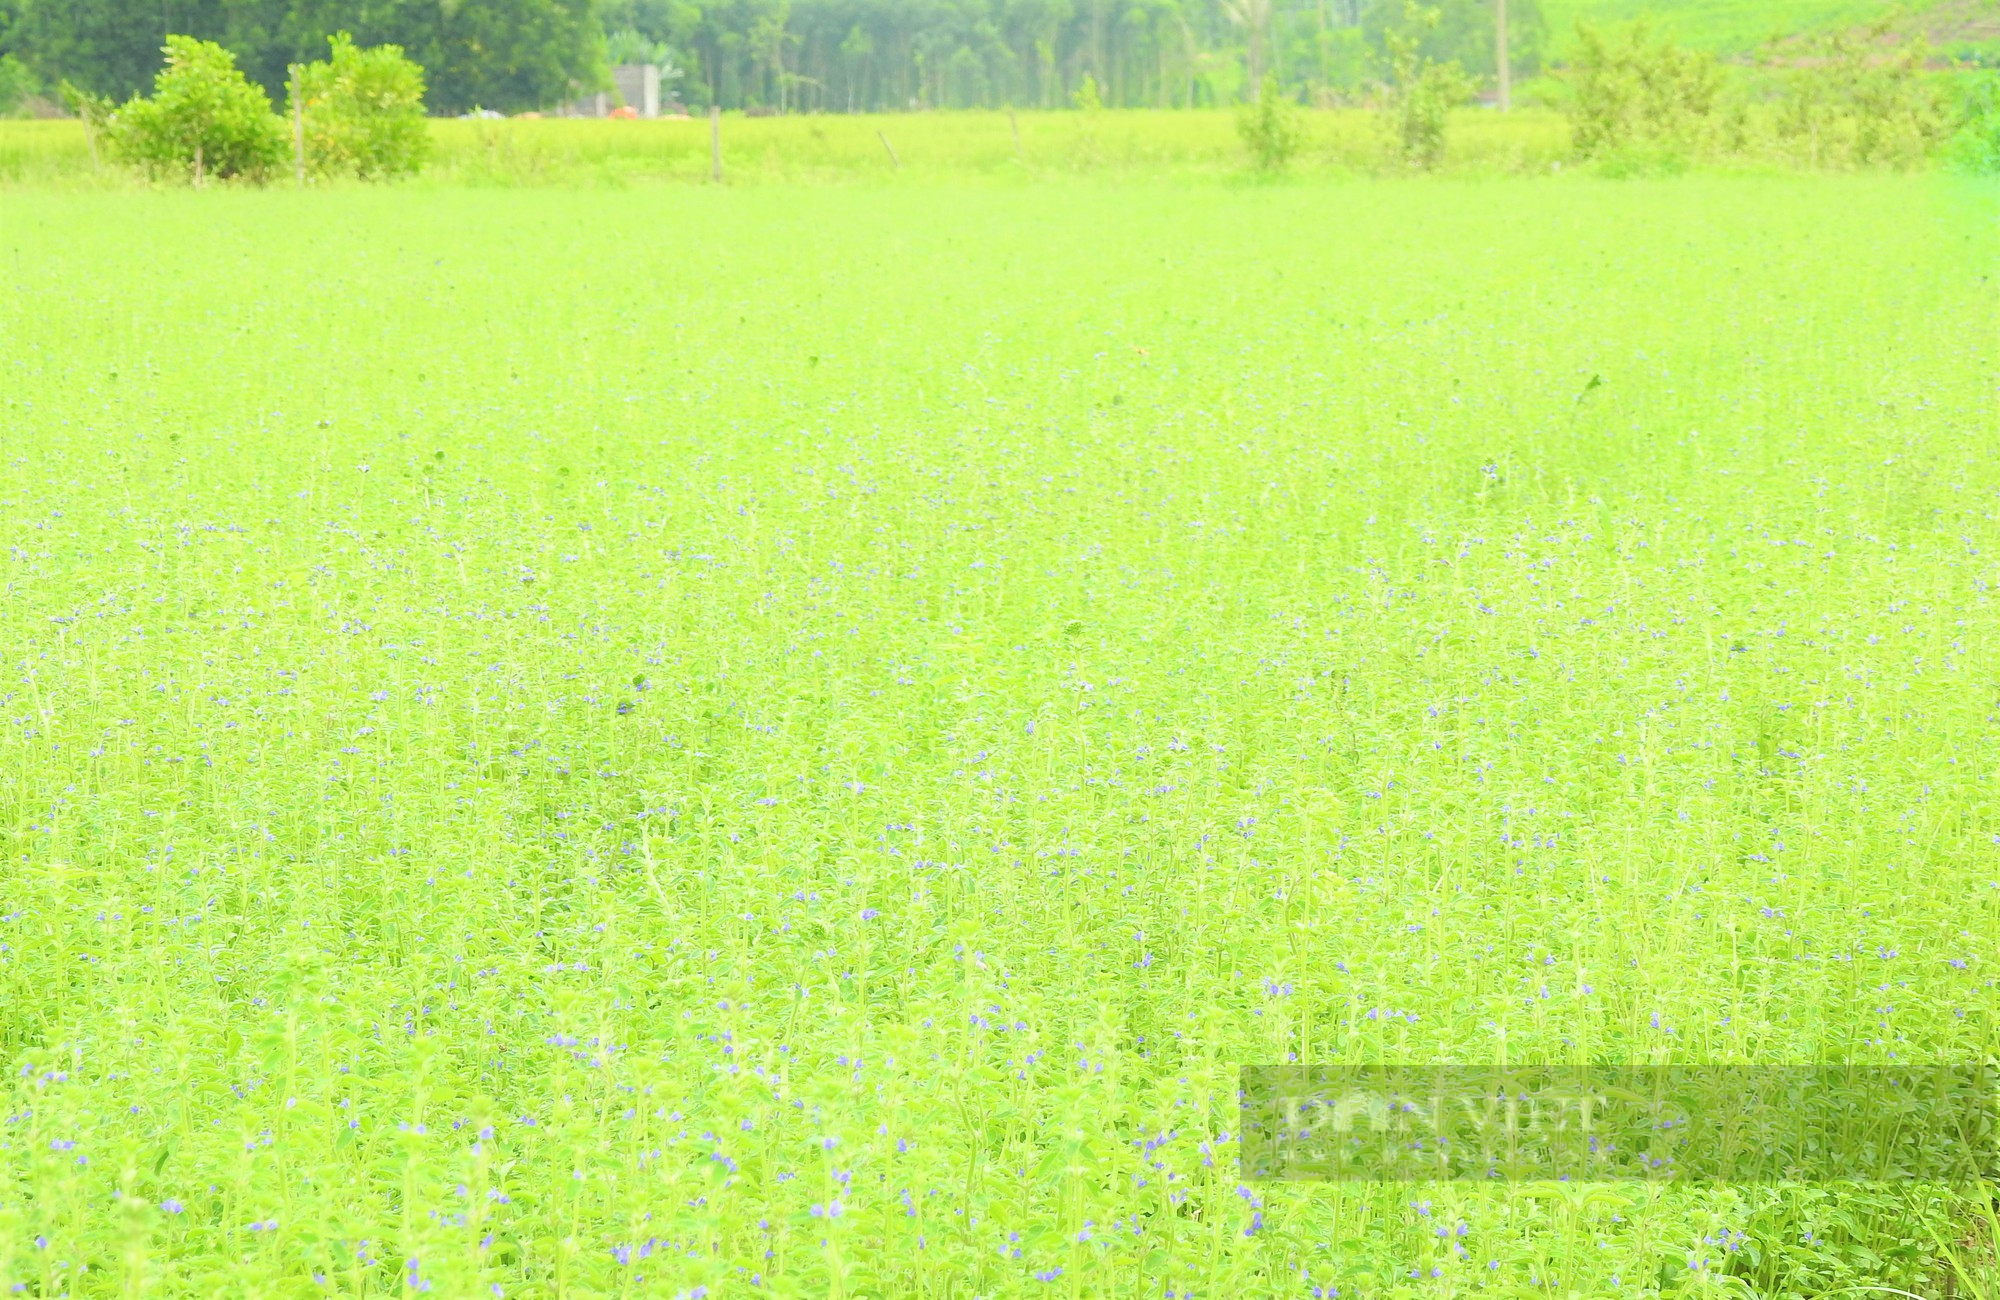 Sắc tím lãng mạn cánh đồng hoa nhân trần ở huyện Yên Thành (Nghệ An) - Ảnh 3.